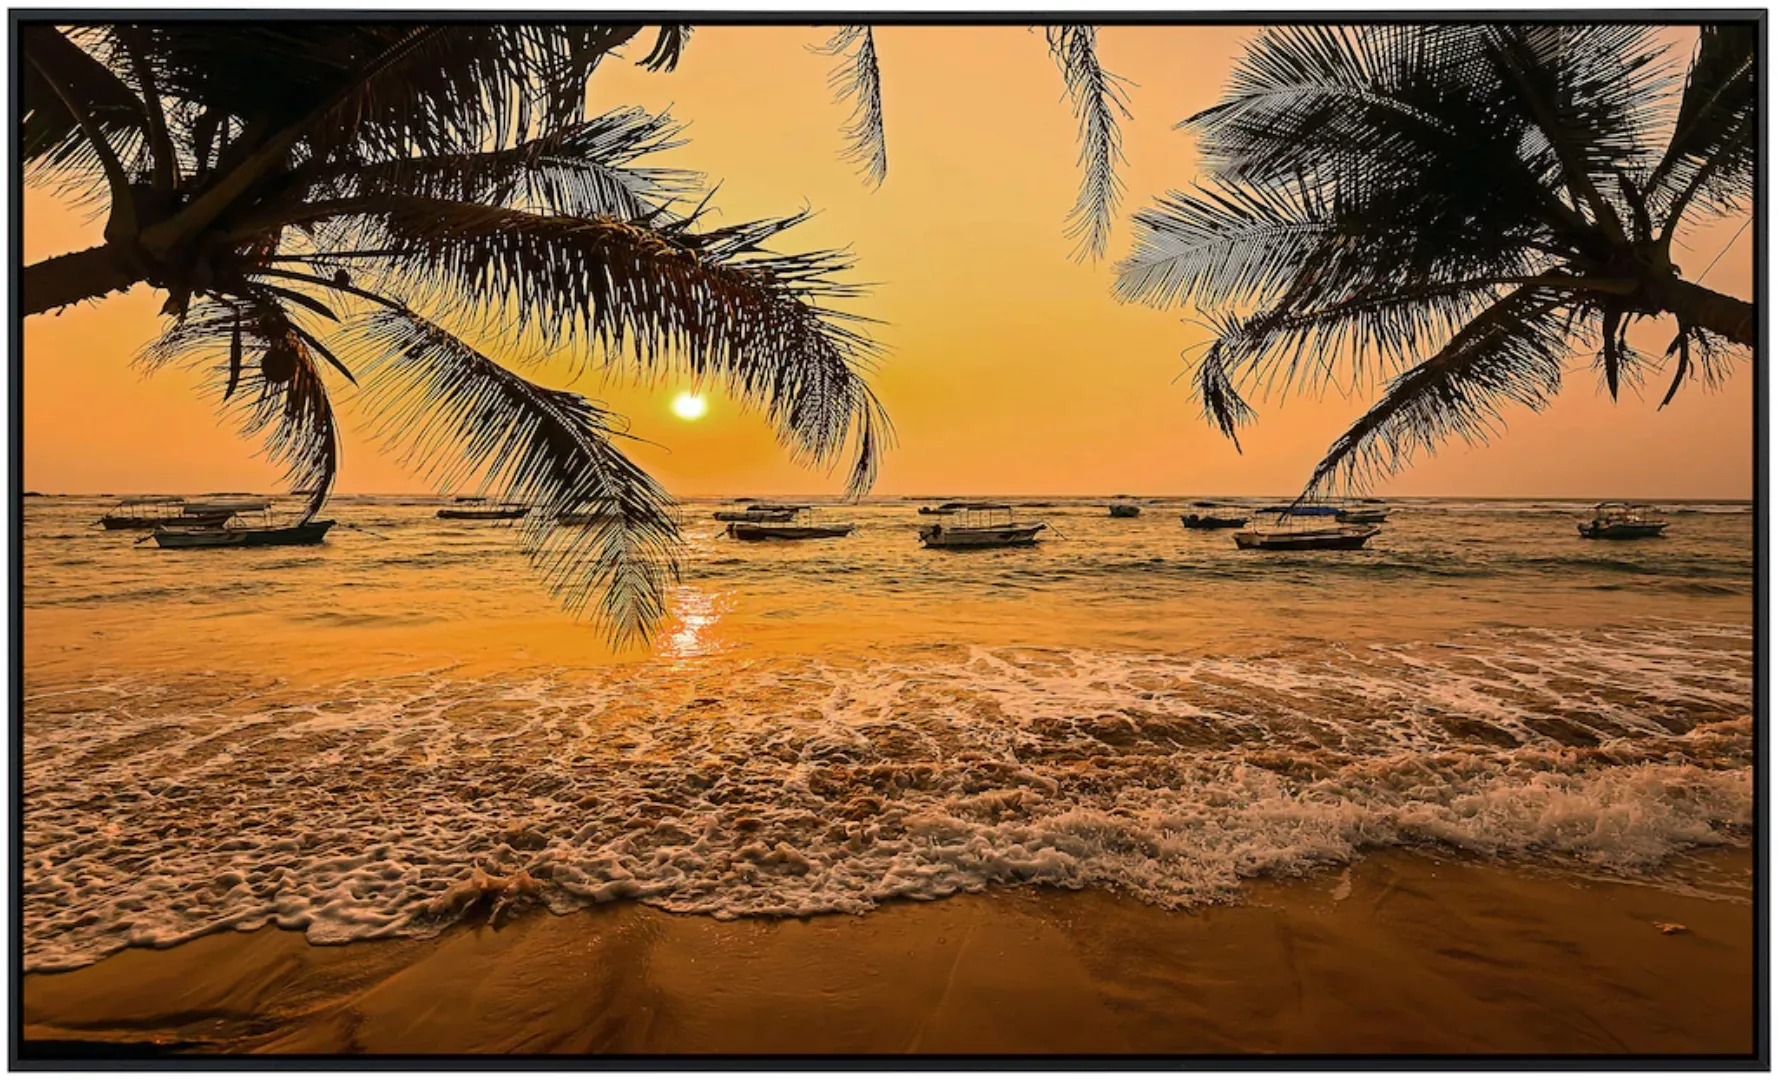 Papermoon Infrarotheizung »Sri Lanka Palm Beach« günstig online kaufen